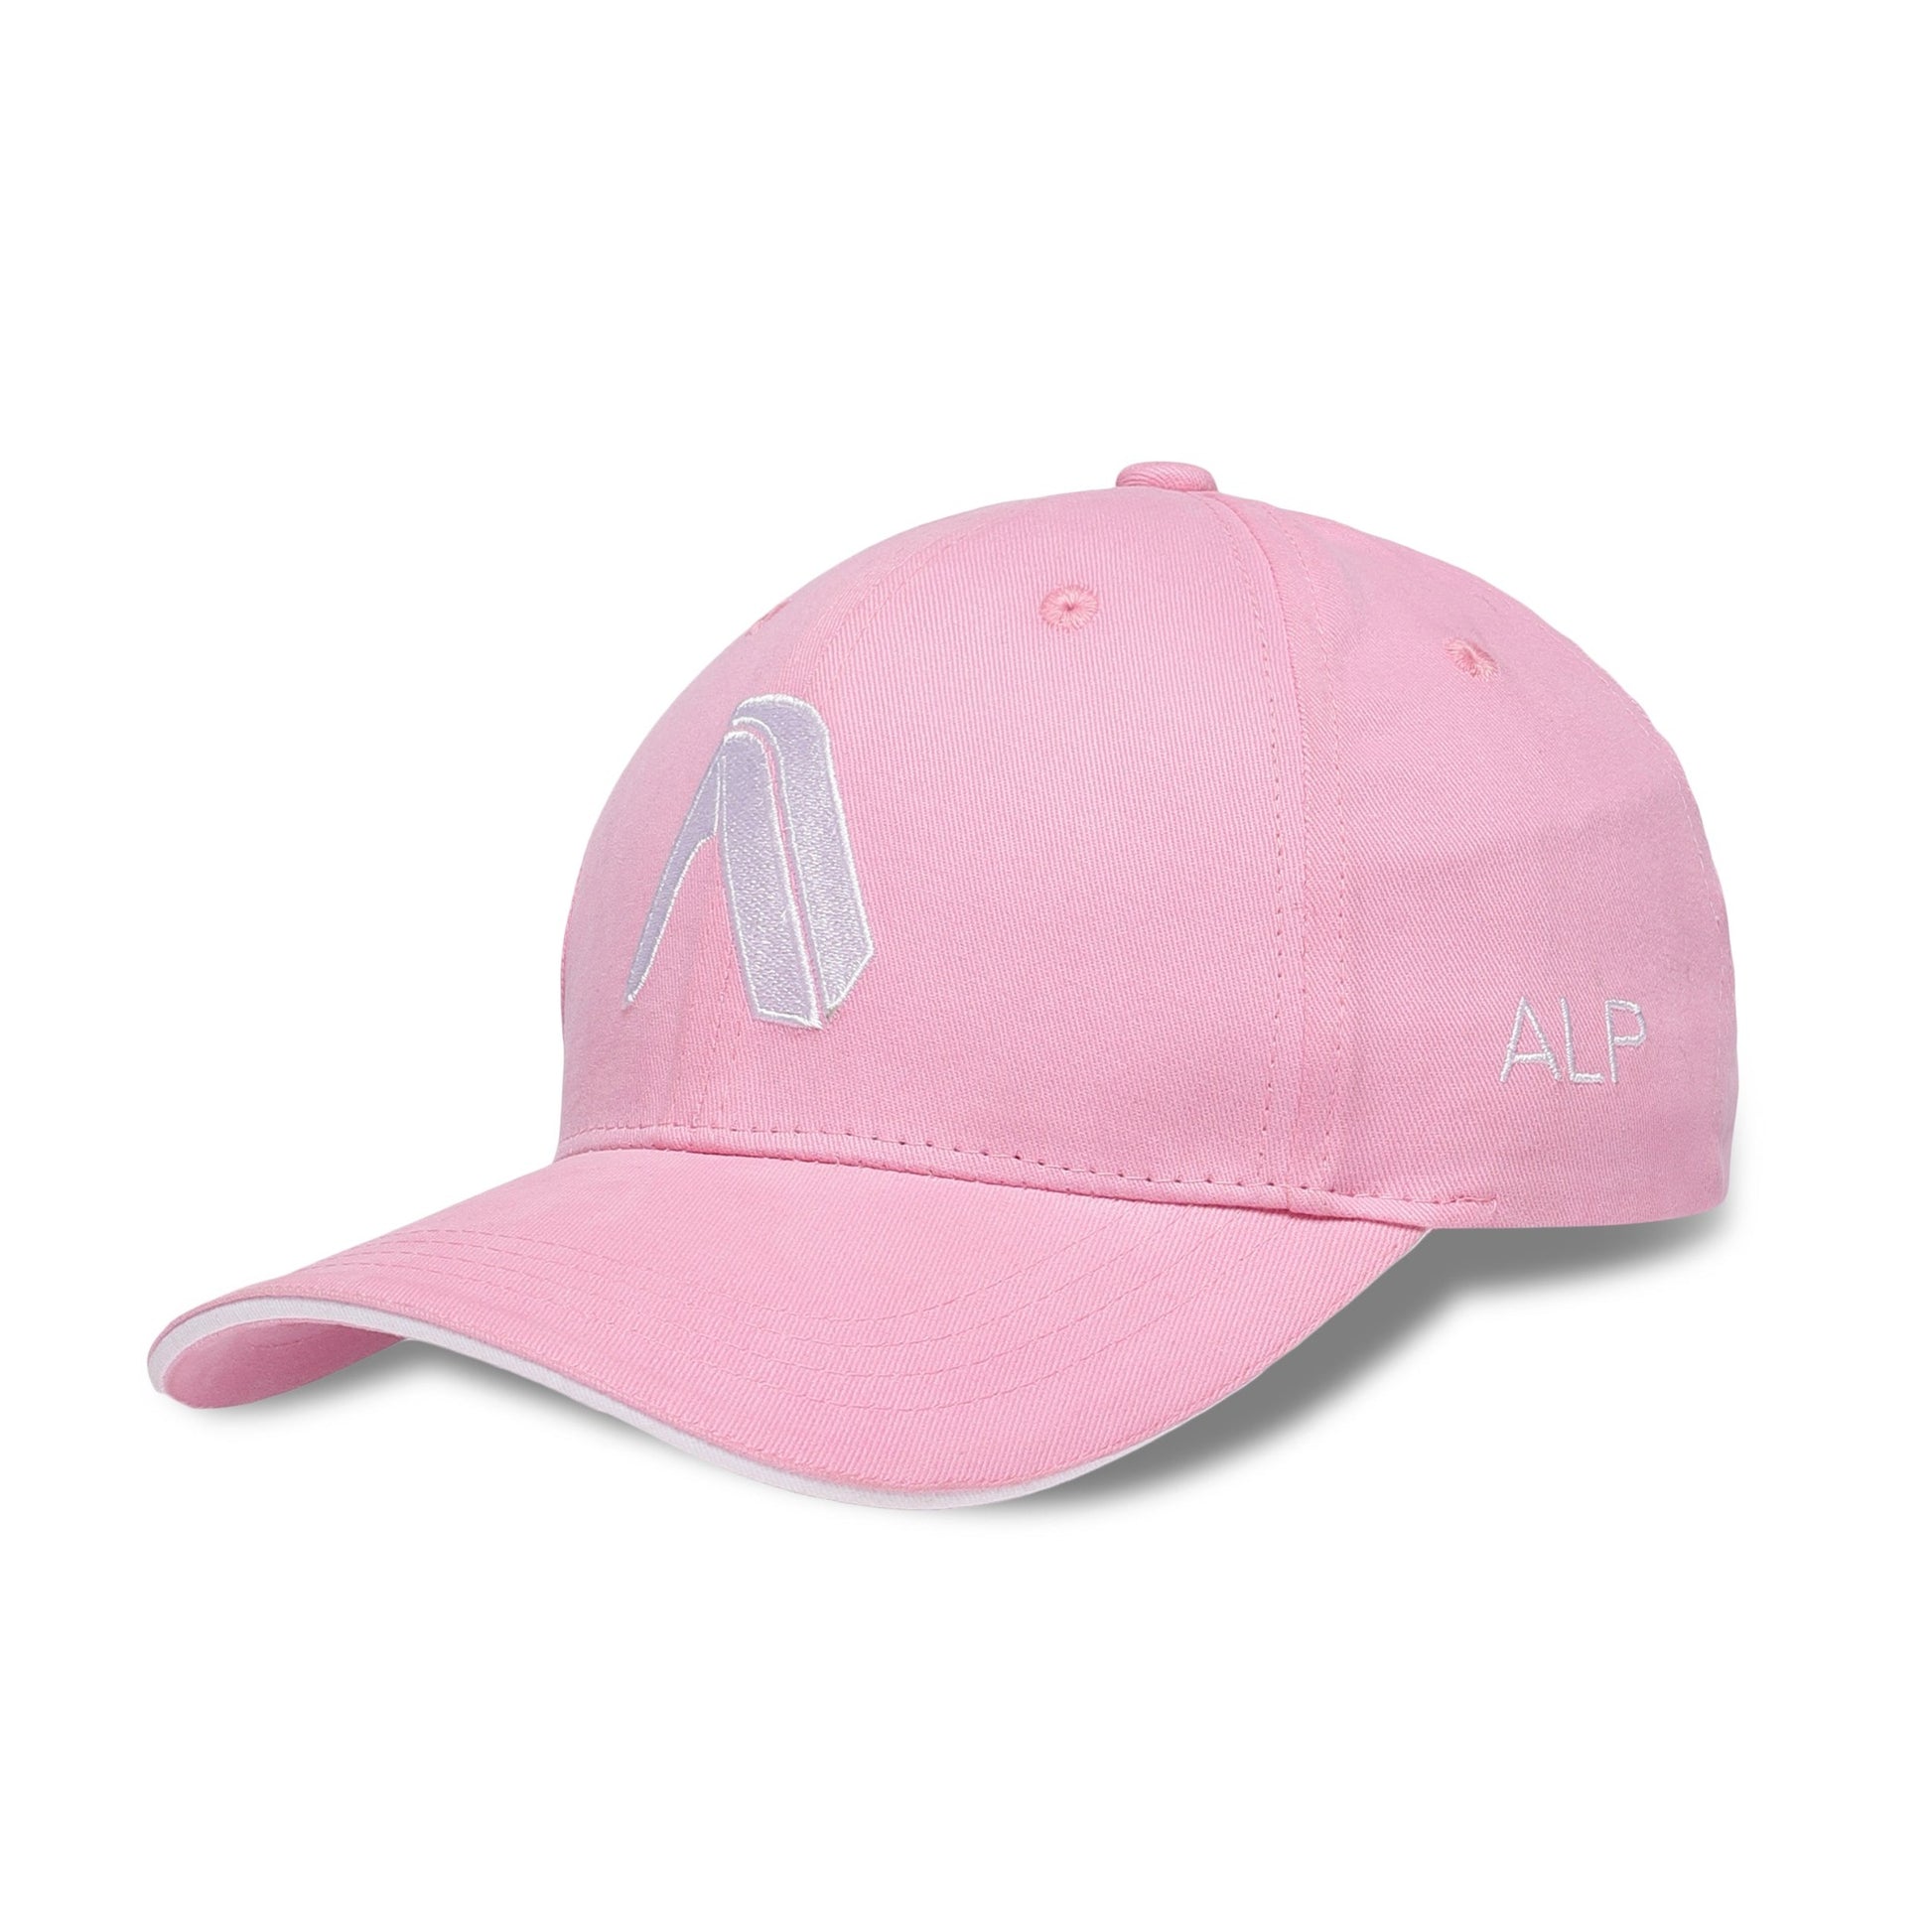 Buy Premium Cotton Caps for Men Online - Pink